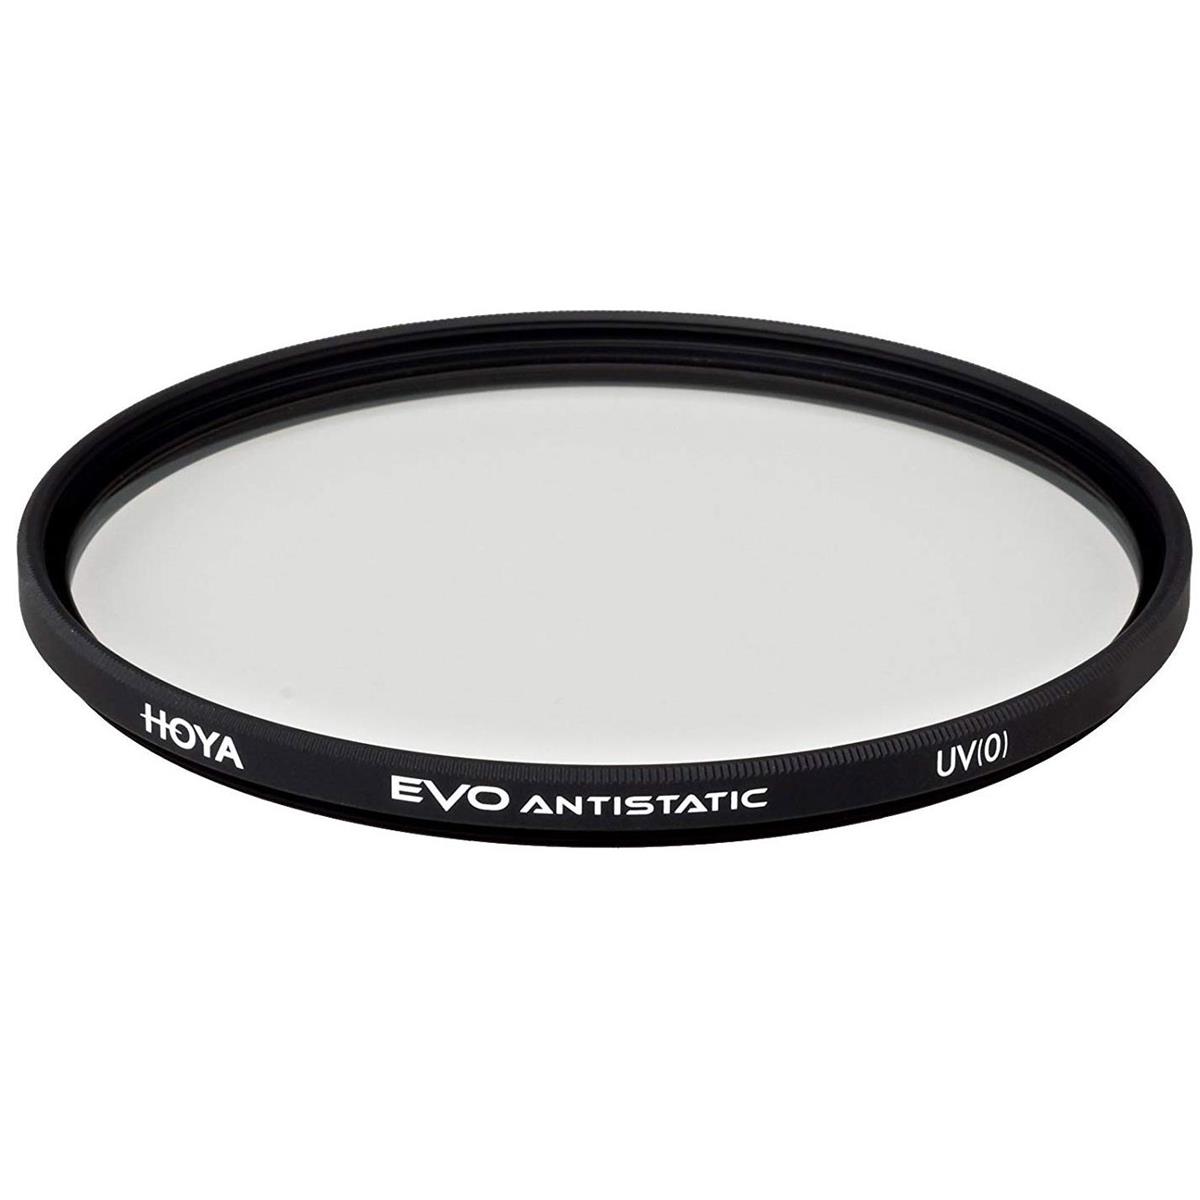 Hoya 105mm EVO UV Filter